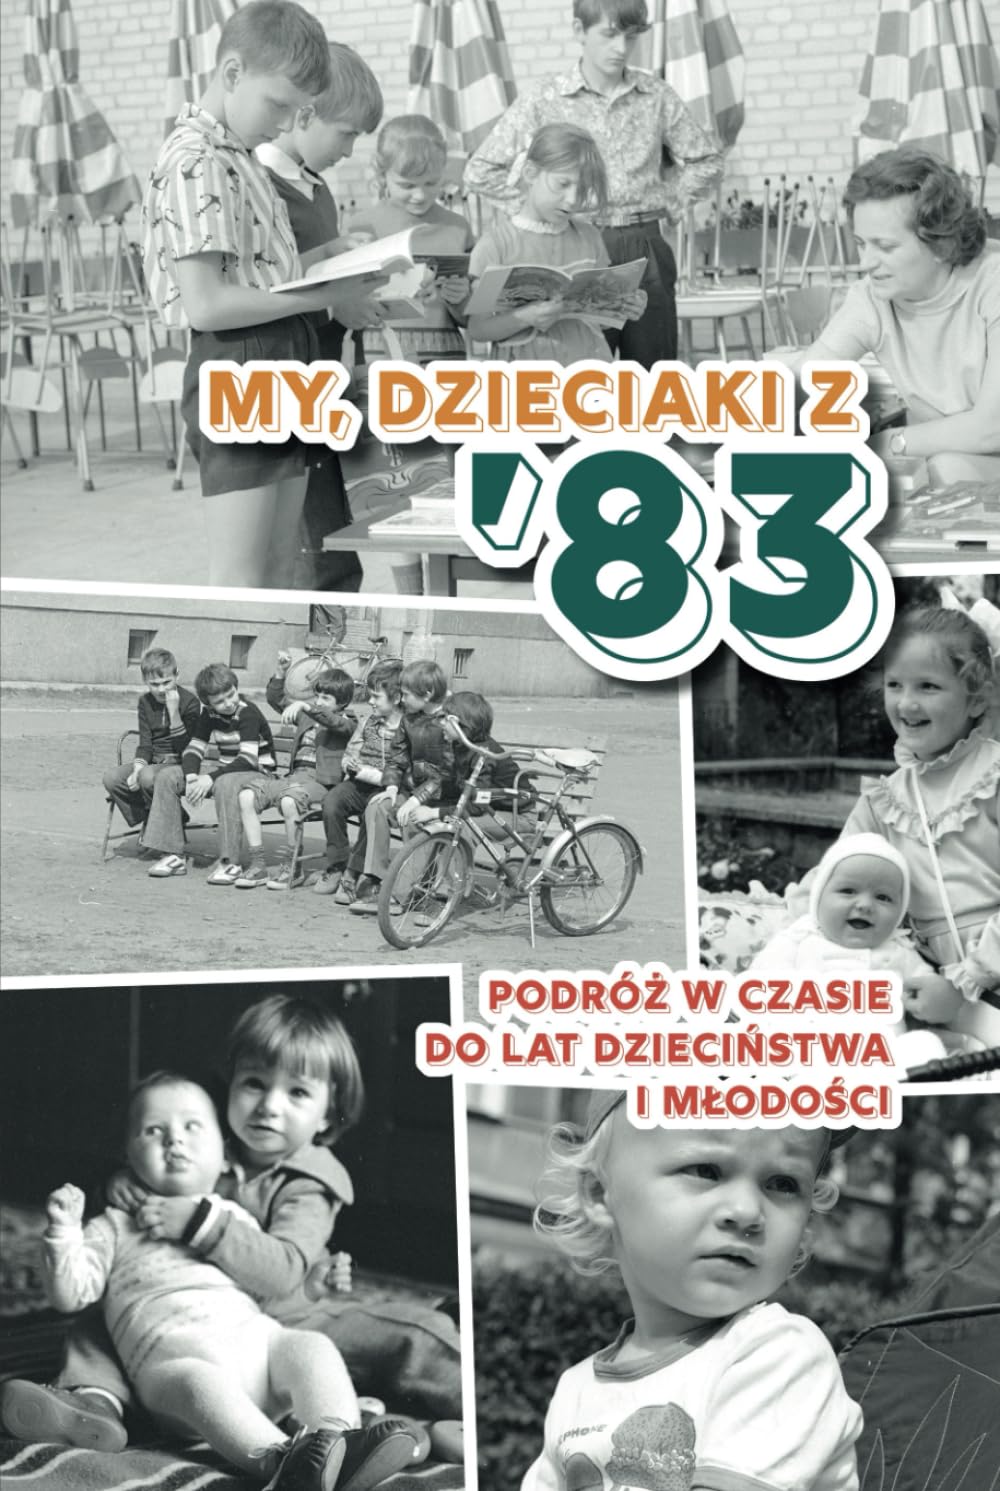 My, dzieciaki z 83: Polska książka na prezent na urodziny (Polish Edition)